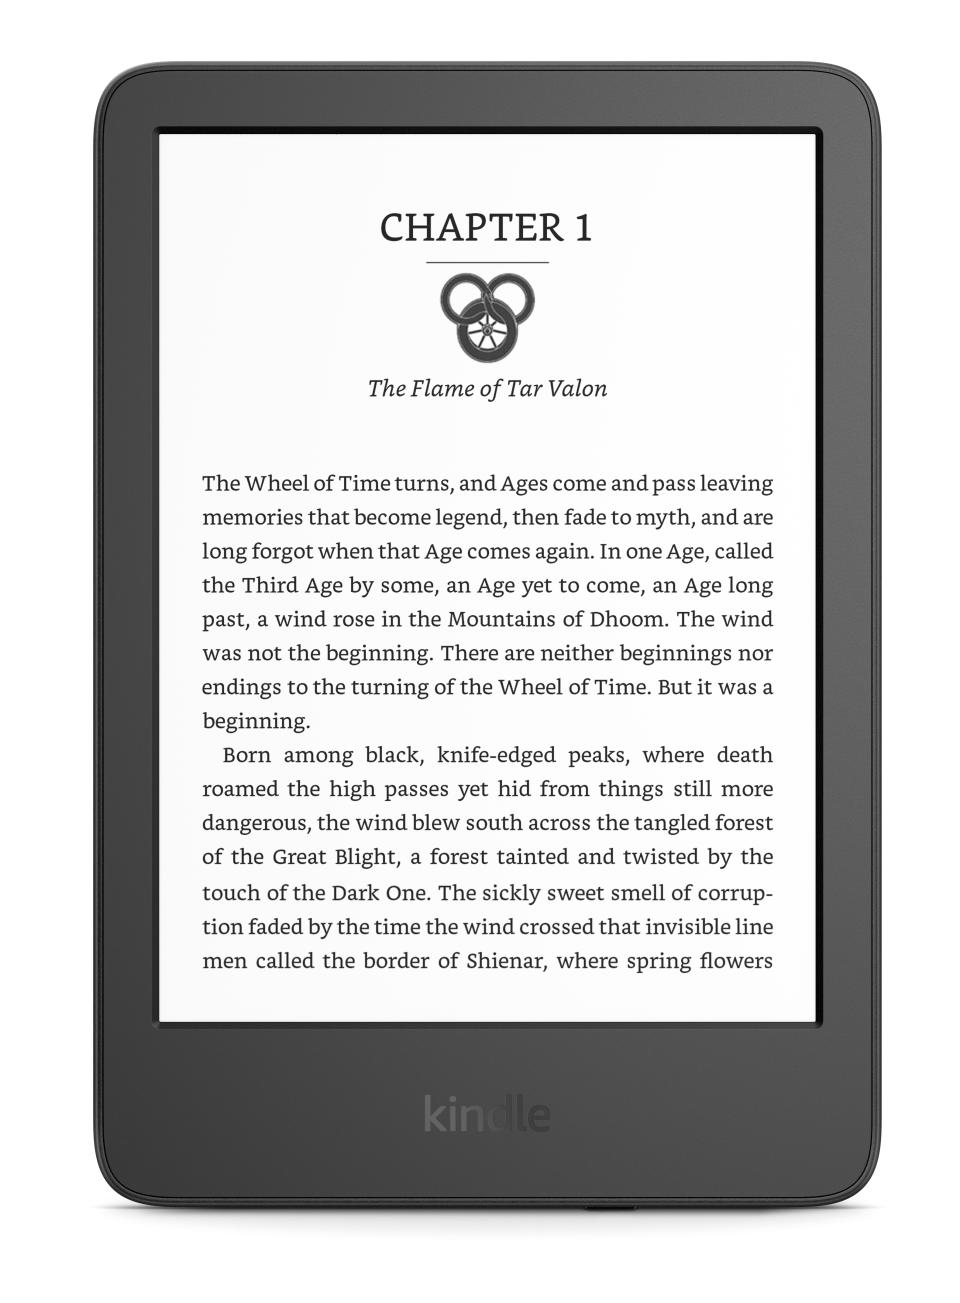 Los lectores especializados de libros electrónicos, como el Kindle de Amazon, ofrecen una experiencia de lectura fluida con texto nítido y de alta resolución sobre un fondo neutro. (Amazon vía The New York Times).